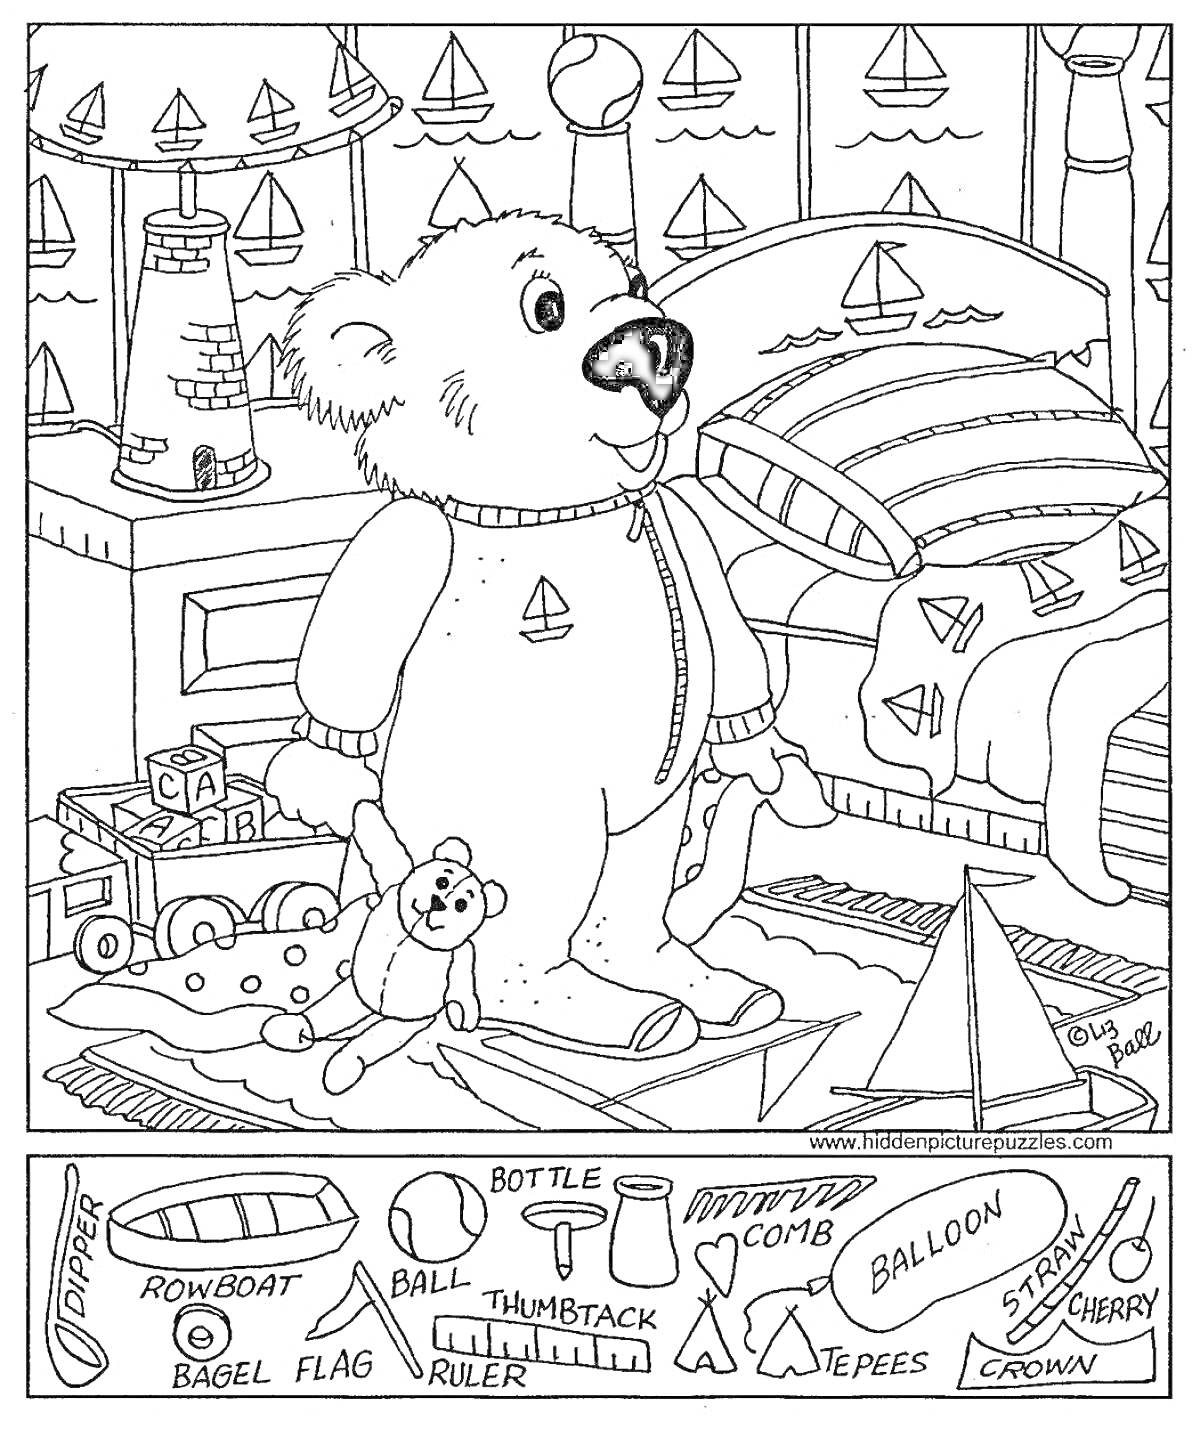 Раскраска Медвежонок в комнате с игрушками и лодками (диван, держит игрушку-медвежонка, машинка, кубики, окно с парусными лодками, настольная лампа, постель с настеленным одеялом, ковер, парусник внизу, игрушки на полу)